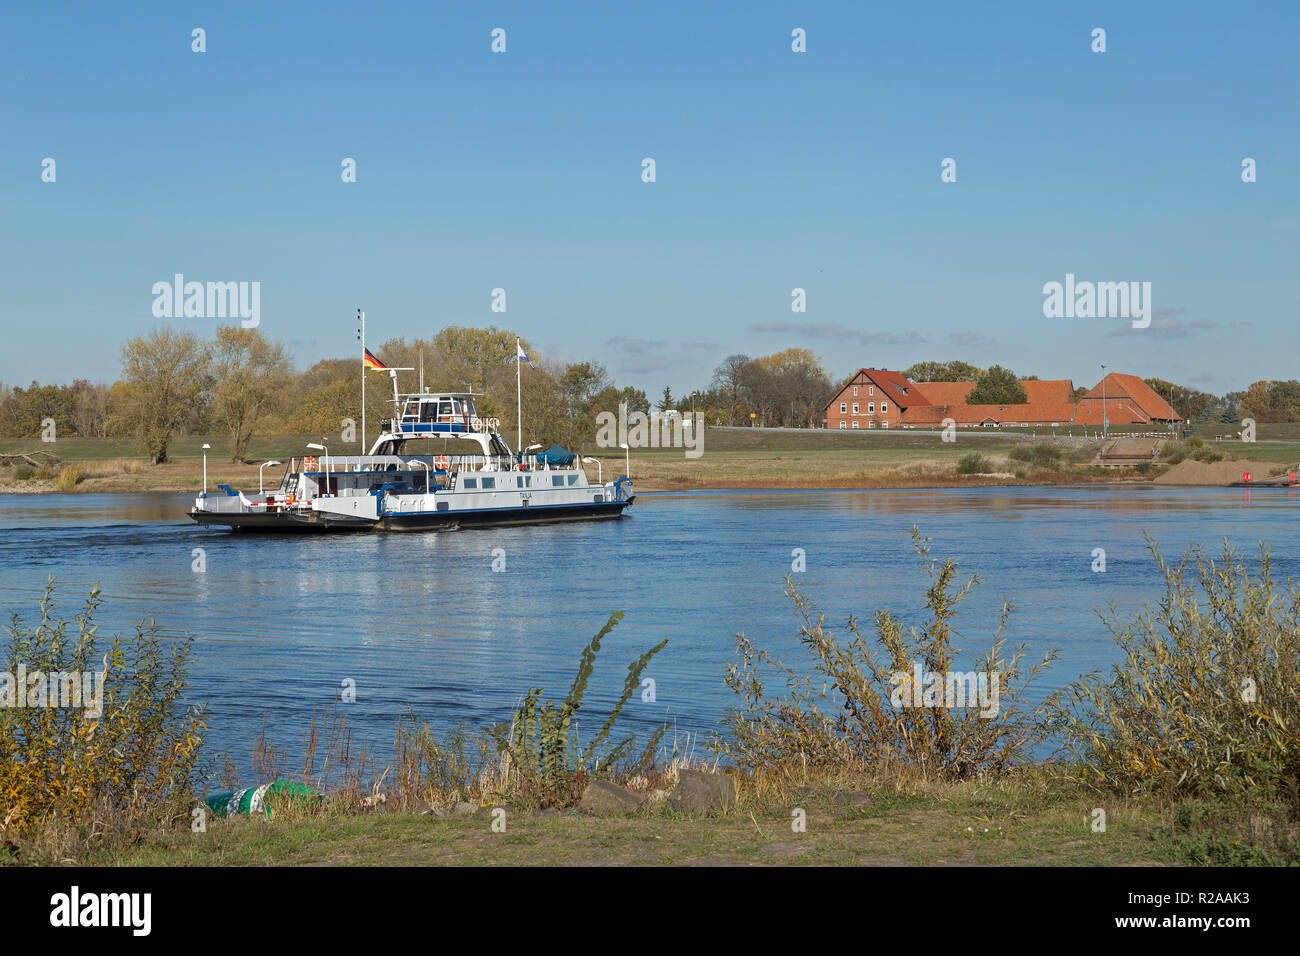 River Elbe ferry, Neu Darchau, Lower Saxony, Germany Stock Photo